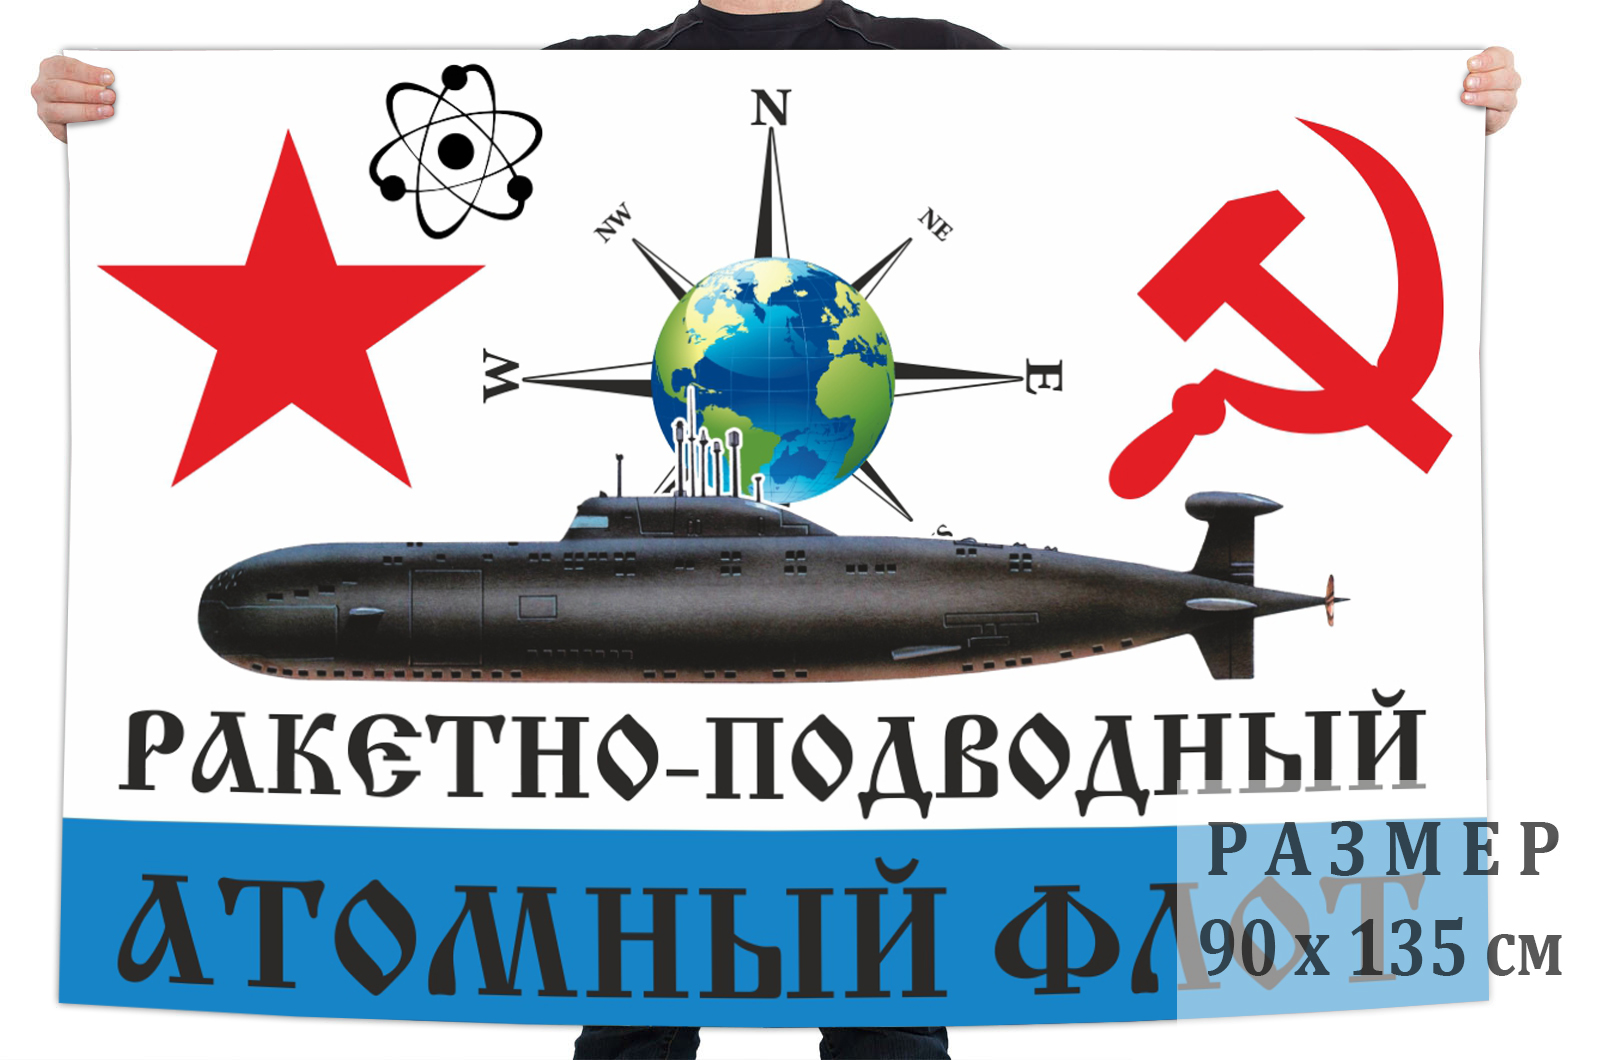 Флаг Атомного подводного флота СССР